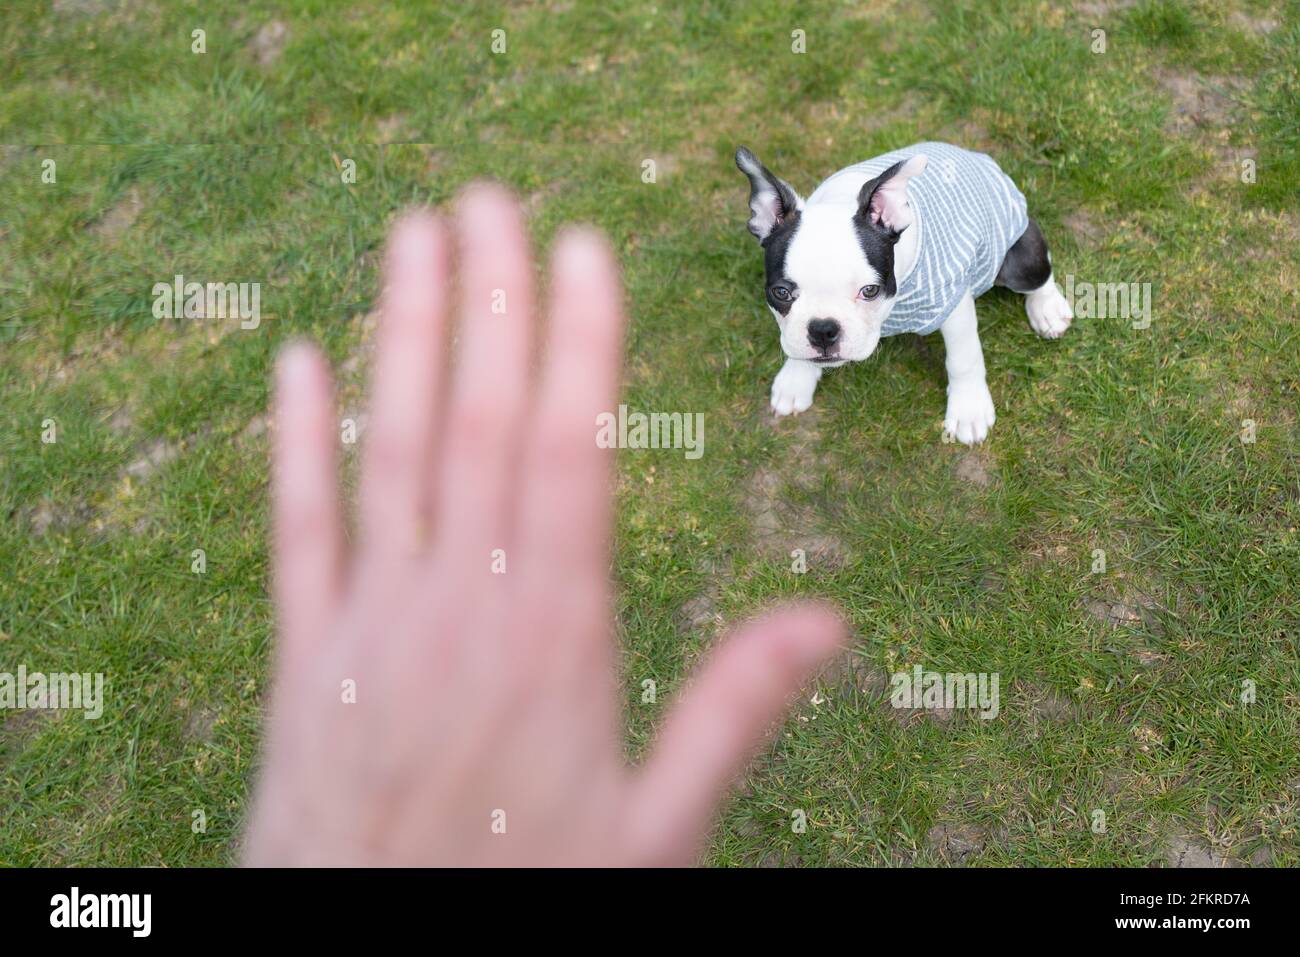 Ein süßer Boston Terrier Welpe, der einen Jumper auf Gras sitzend trägt und auf eine menschliche Hand blickt, während er während einer Trainingseinheit einen Stopp- oder Aufenthaltsbefehl ausgibt. Stockfoto